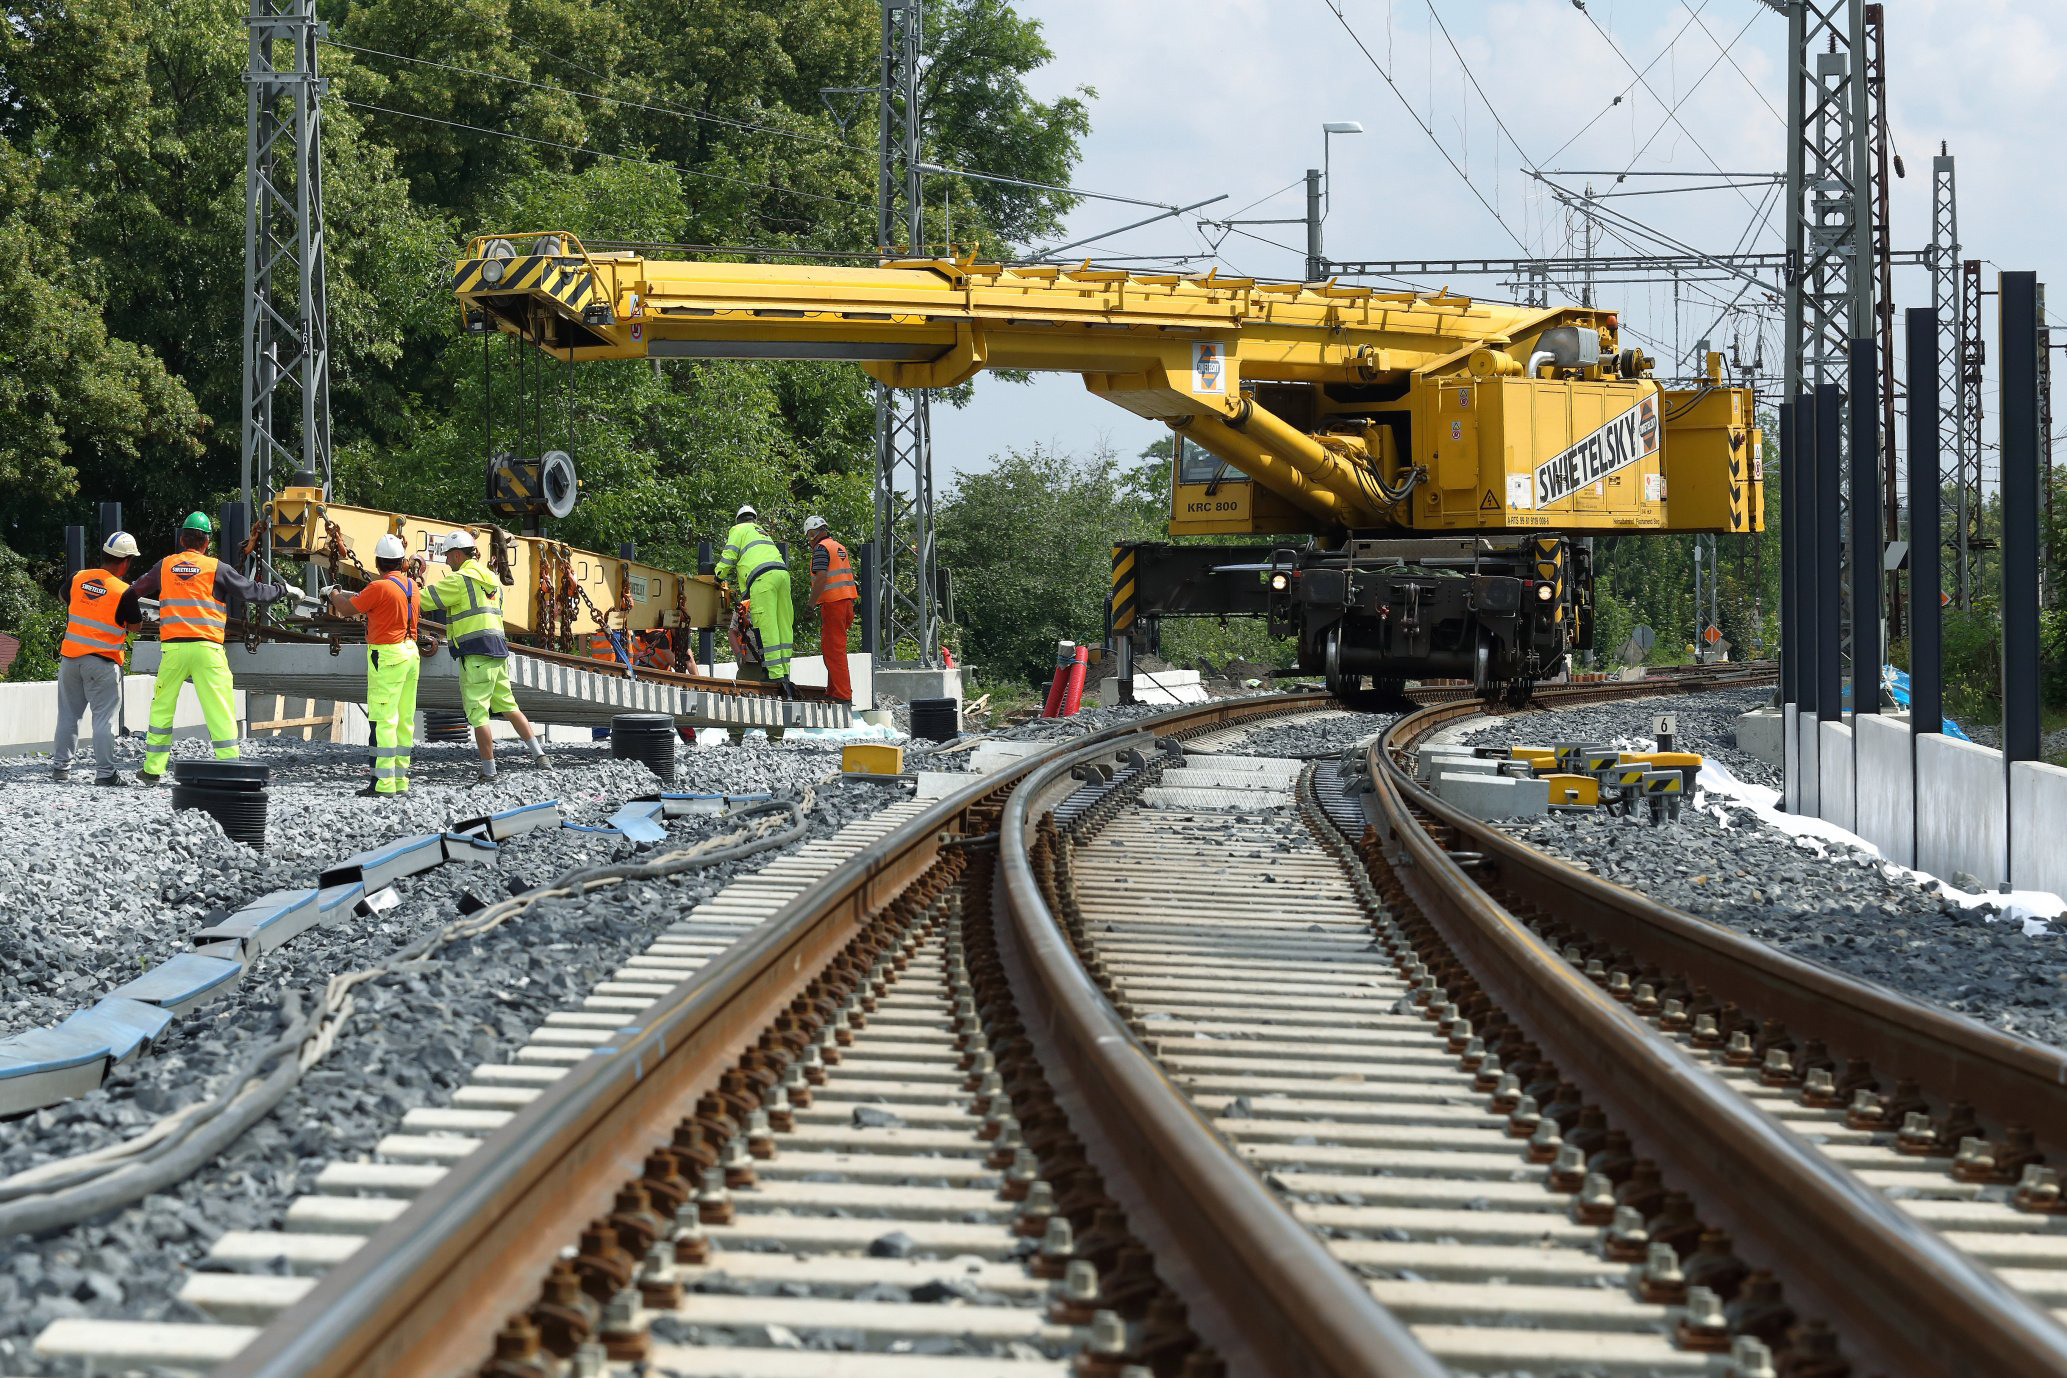 Obnova železniční stanice, Čelákovice - Železničné stavby